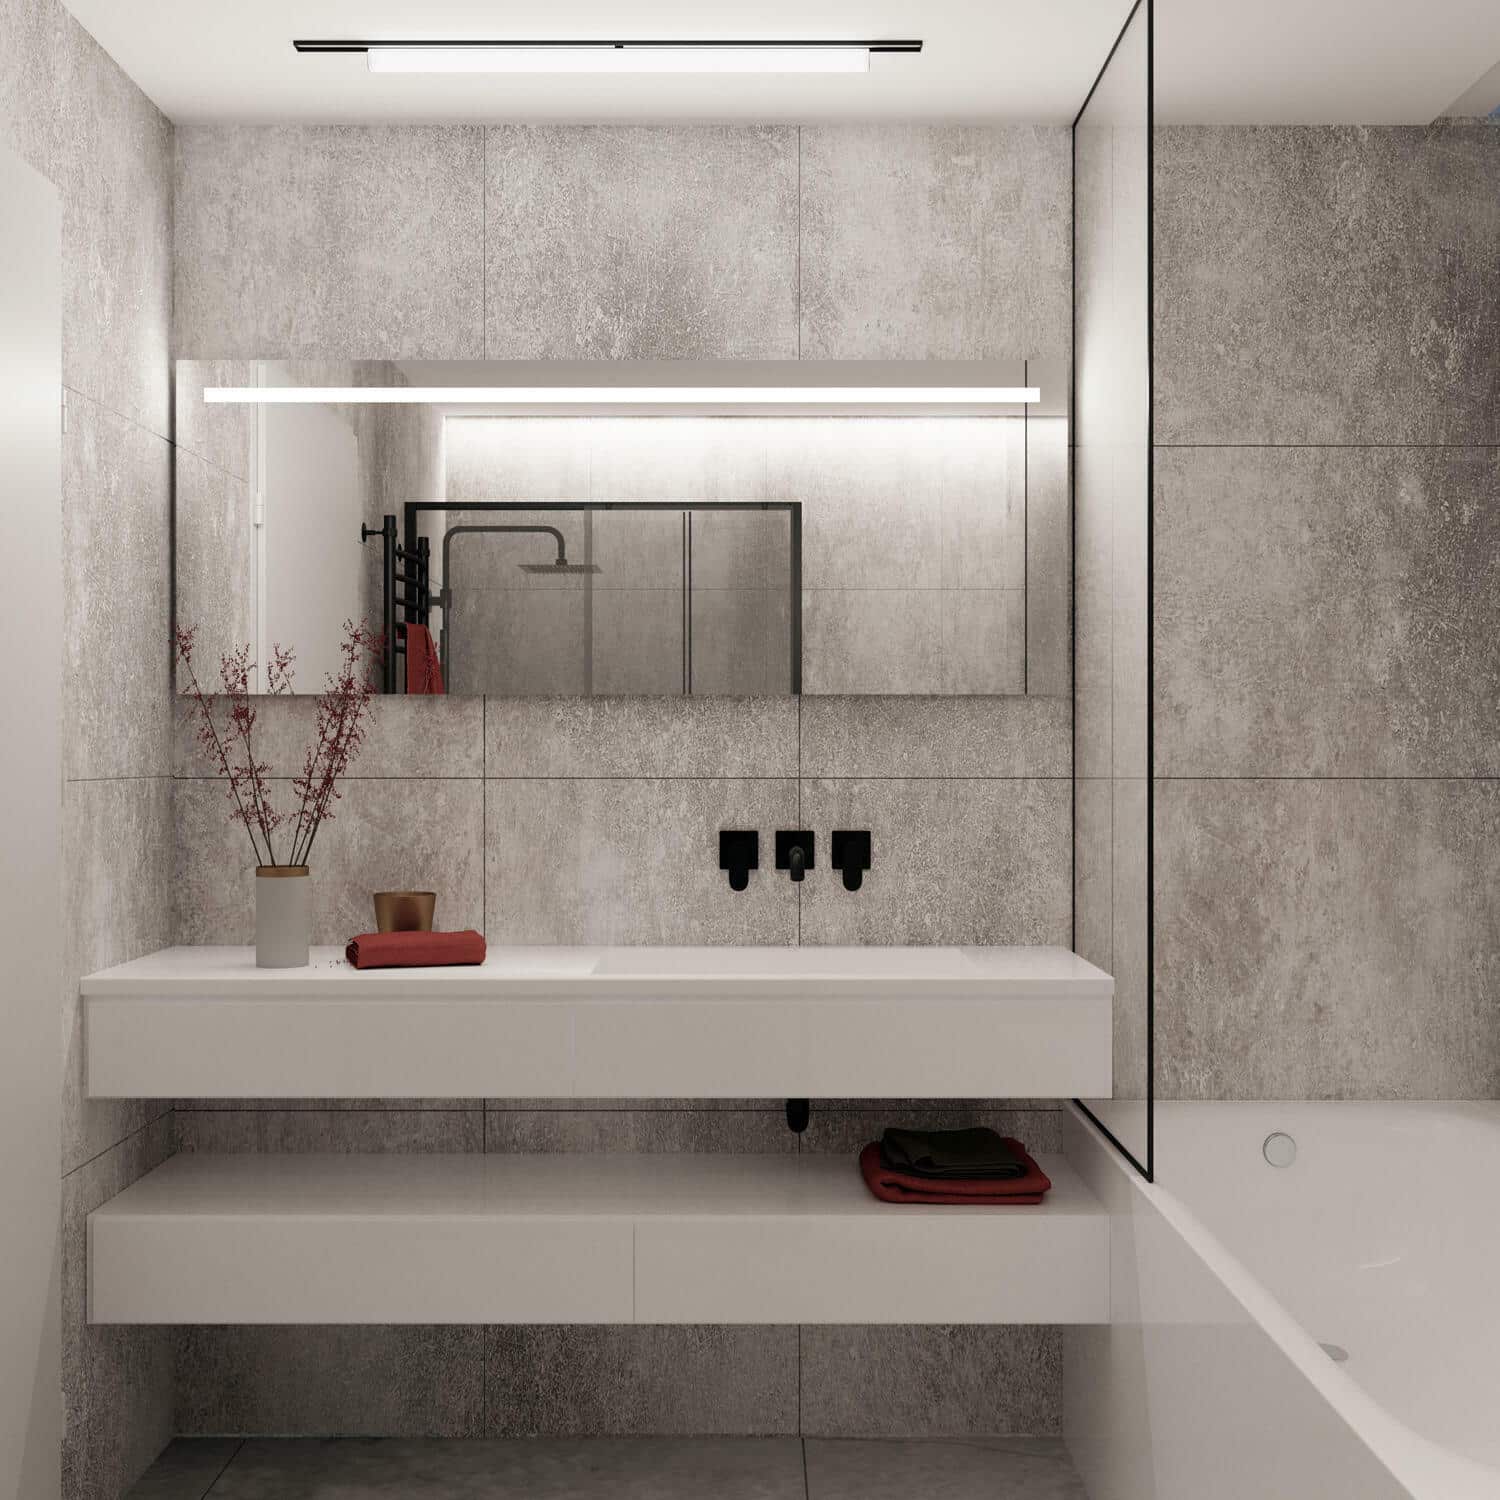 Deze badkamer spiegel is 160 cm breed, 70 cm hoog en slechts 3 cm diep